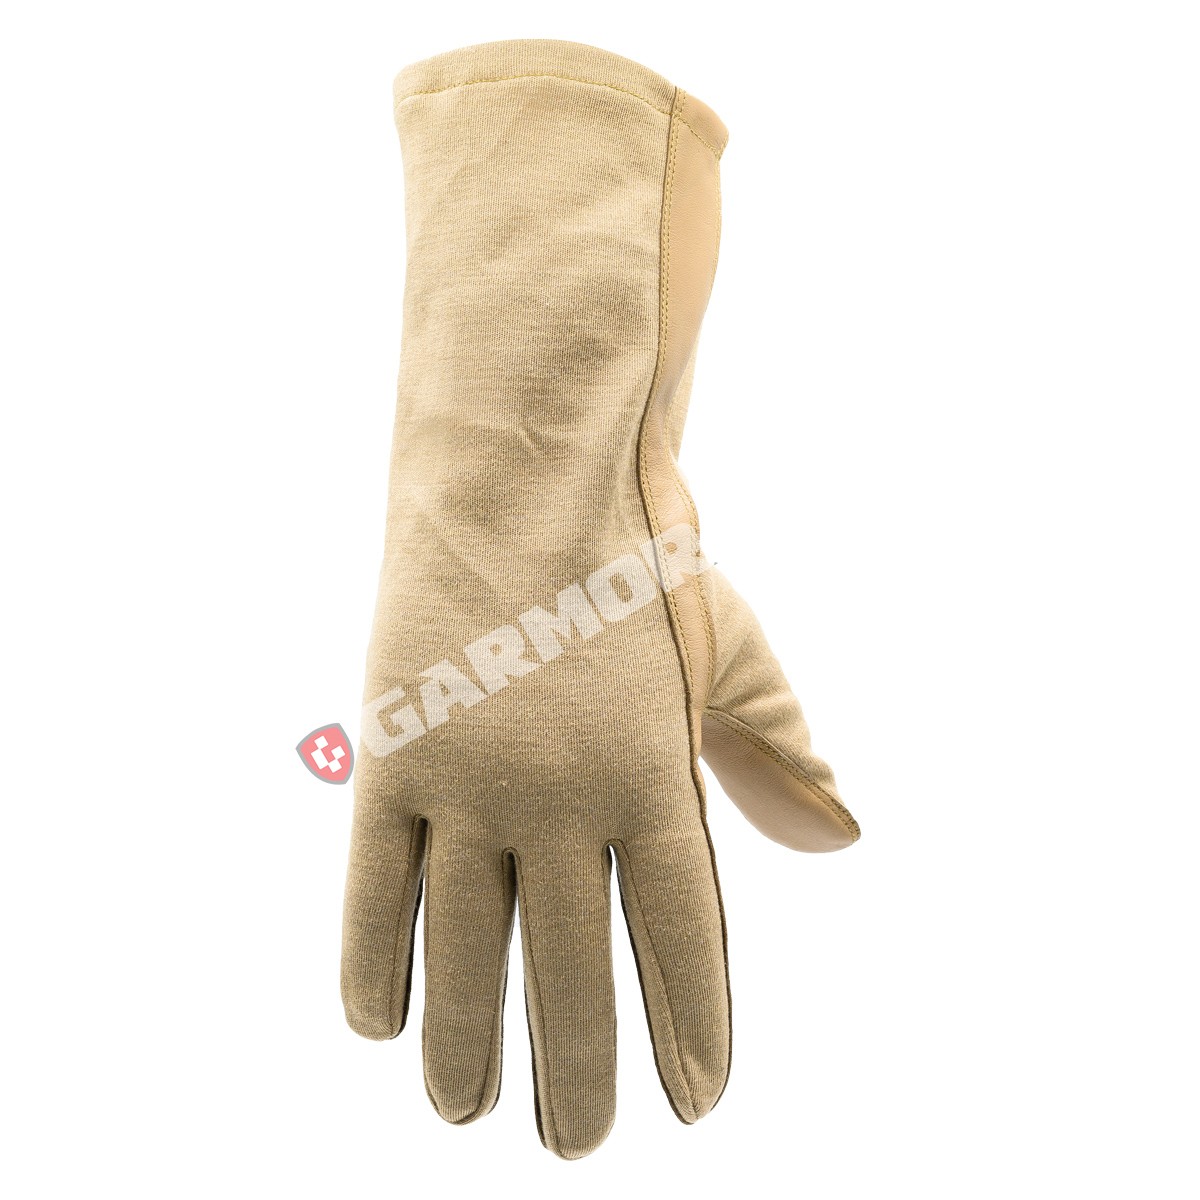 Flyer's Gloves